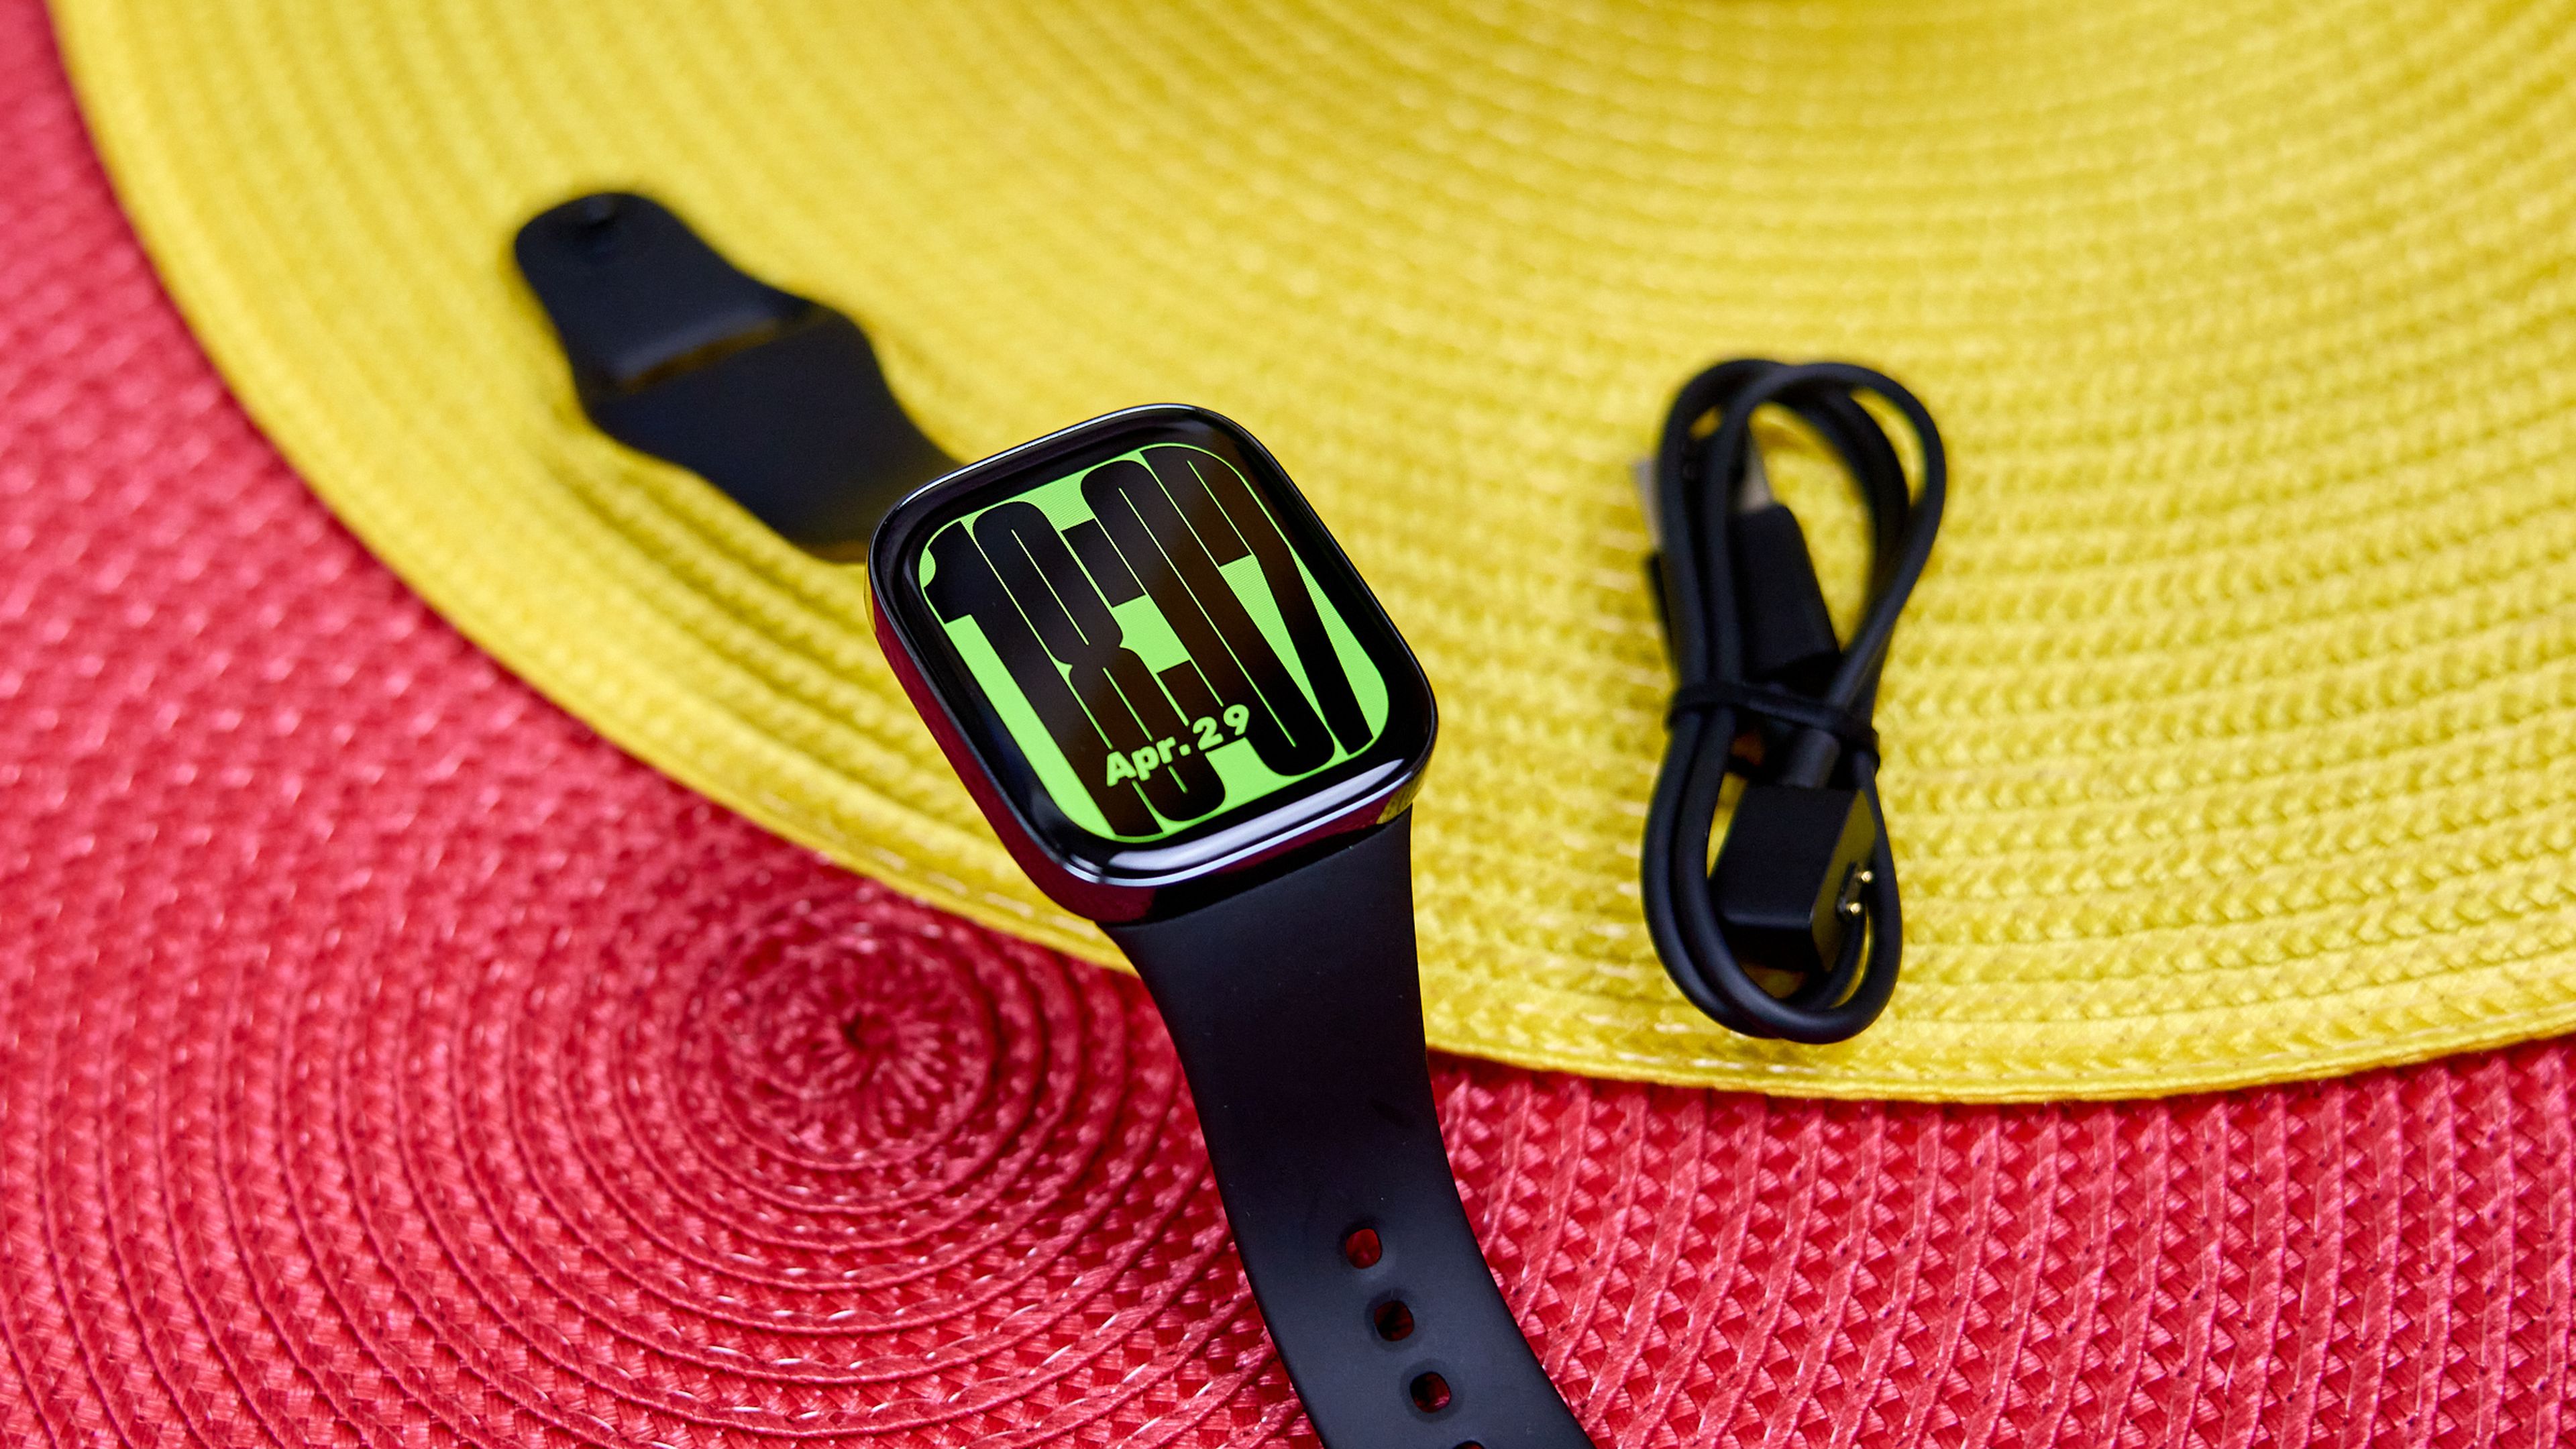 Probamos el Redmi Watch 3: el smartwatch de Xiaomi se reinventa